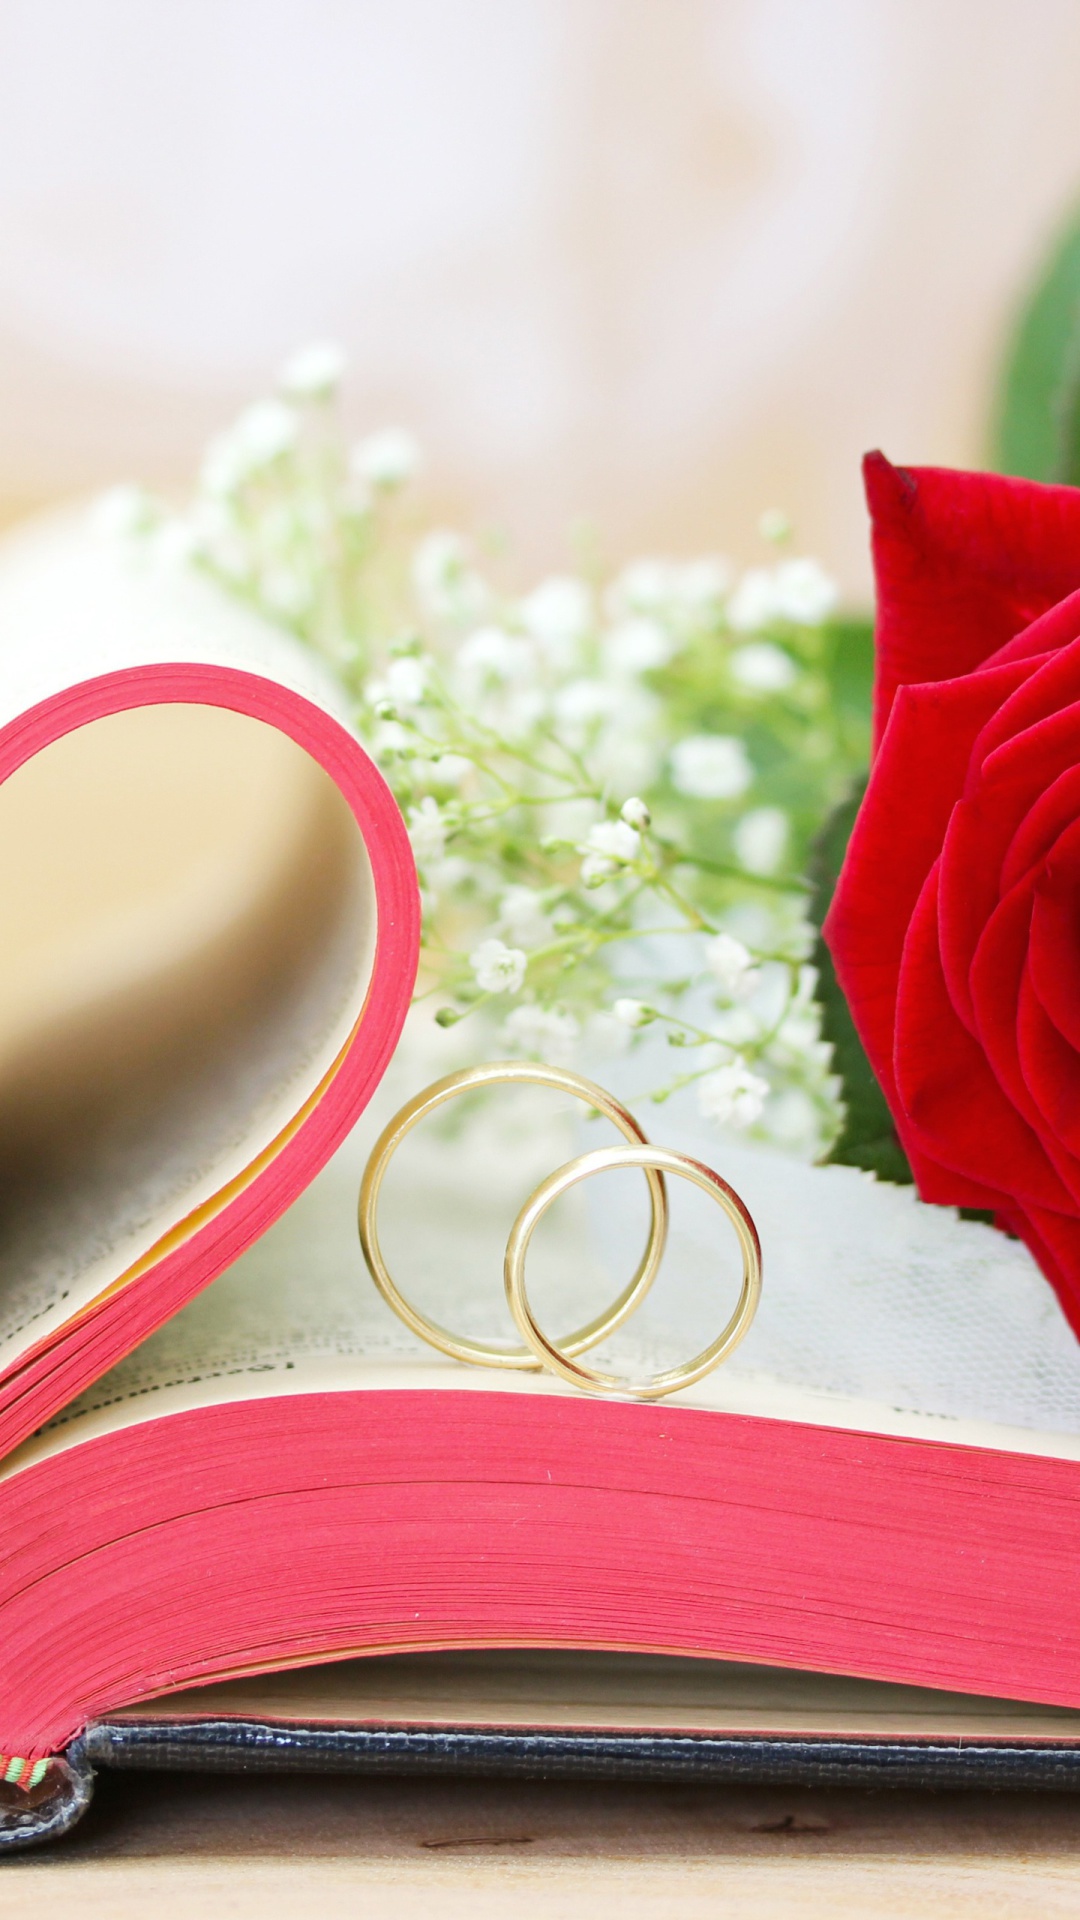 Обои Wedding rings and book 1080x1920